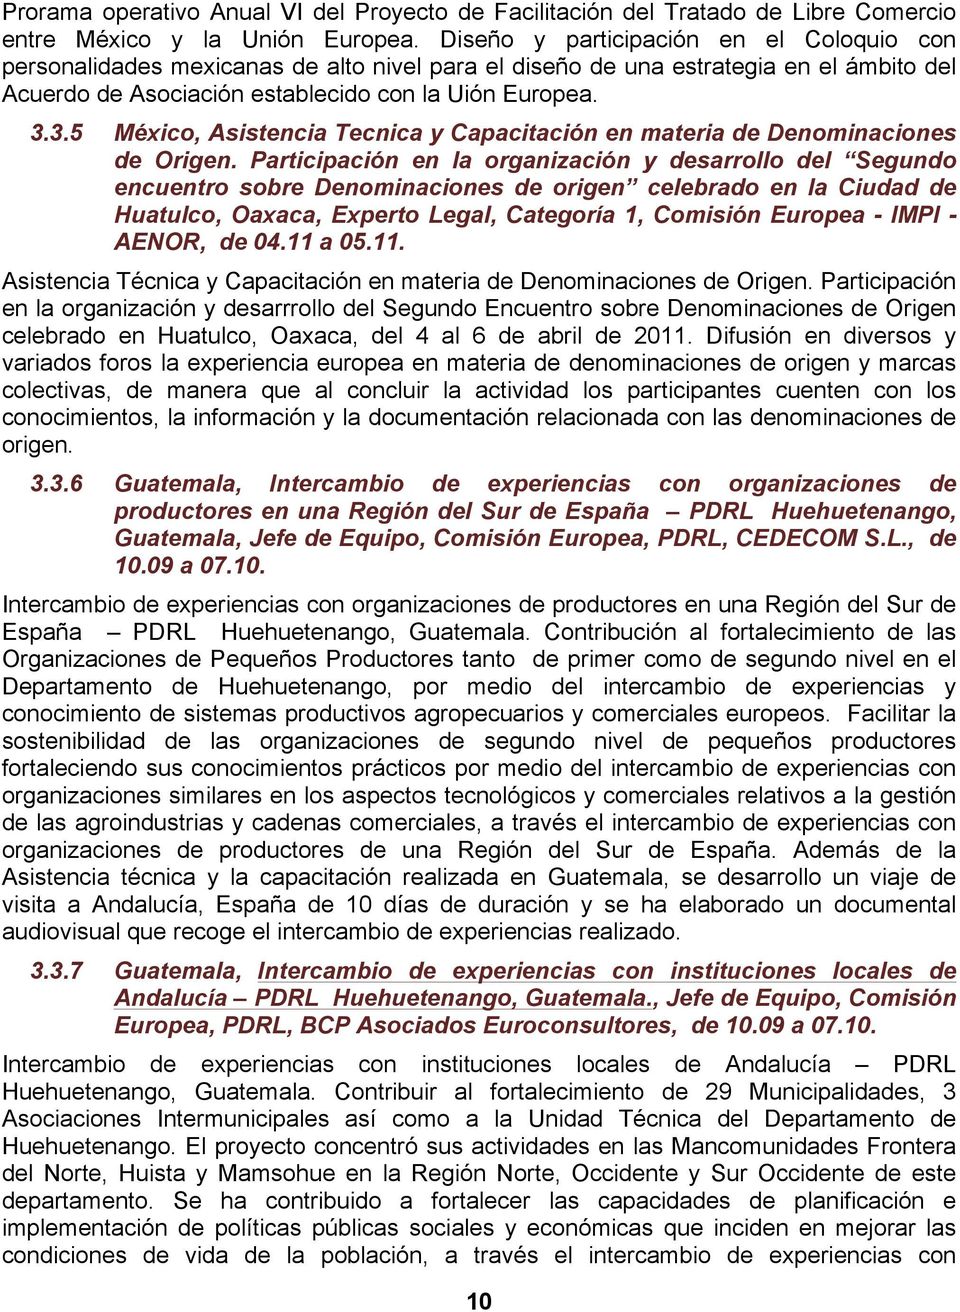 3.5 México, Asistencia Tecnica y Capacitación en materia de Denominaciones de Origen.